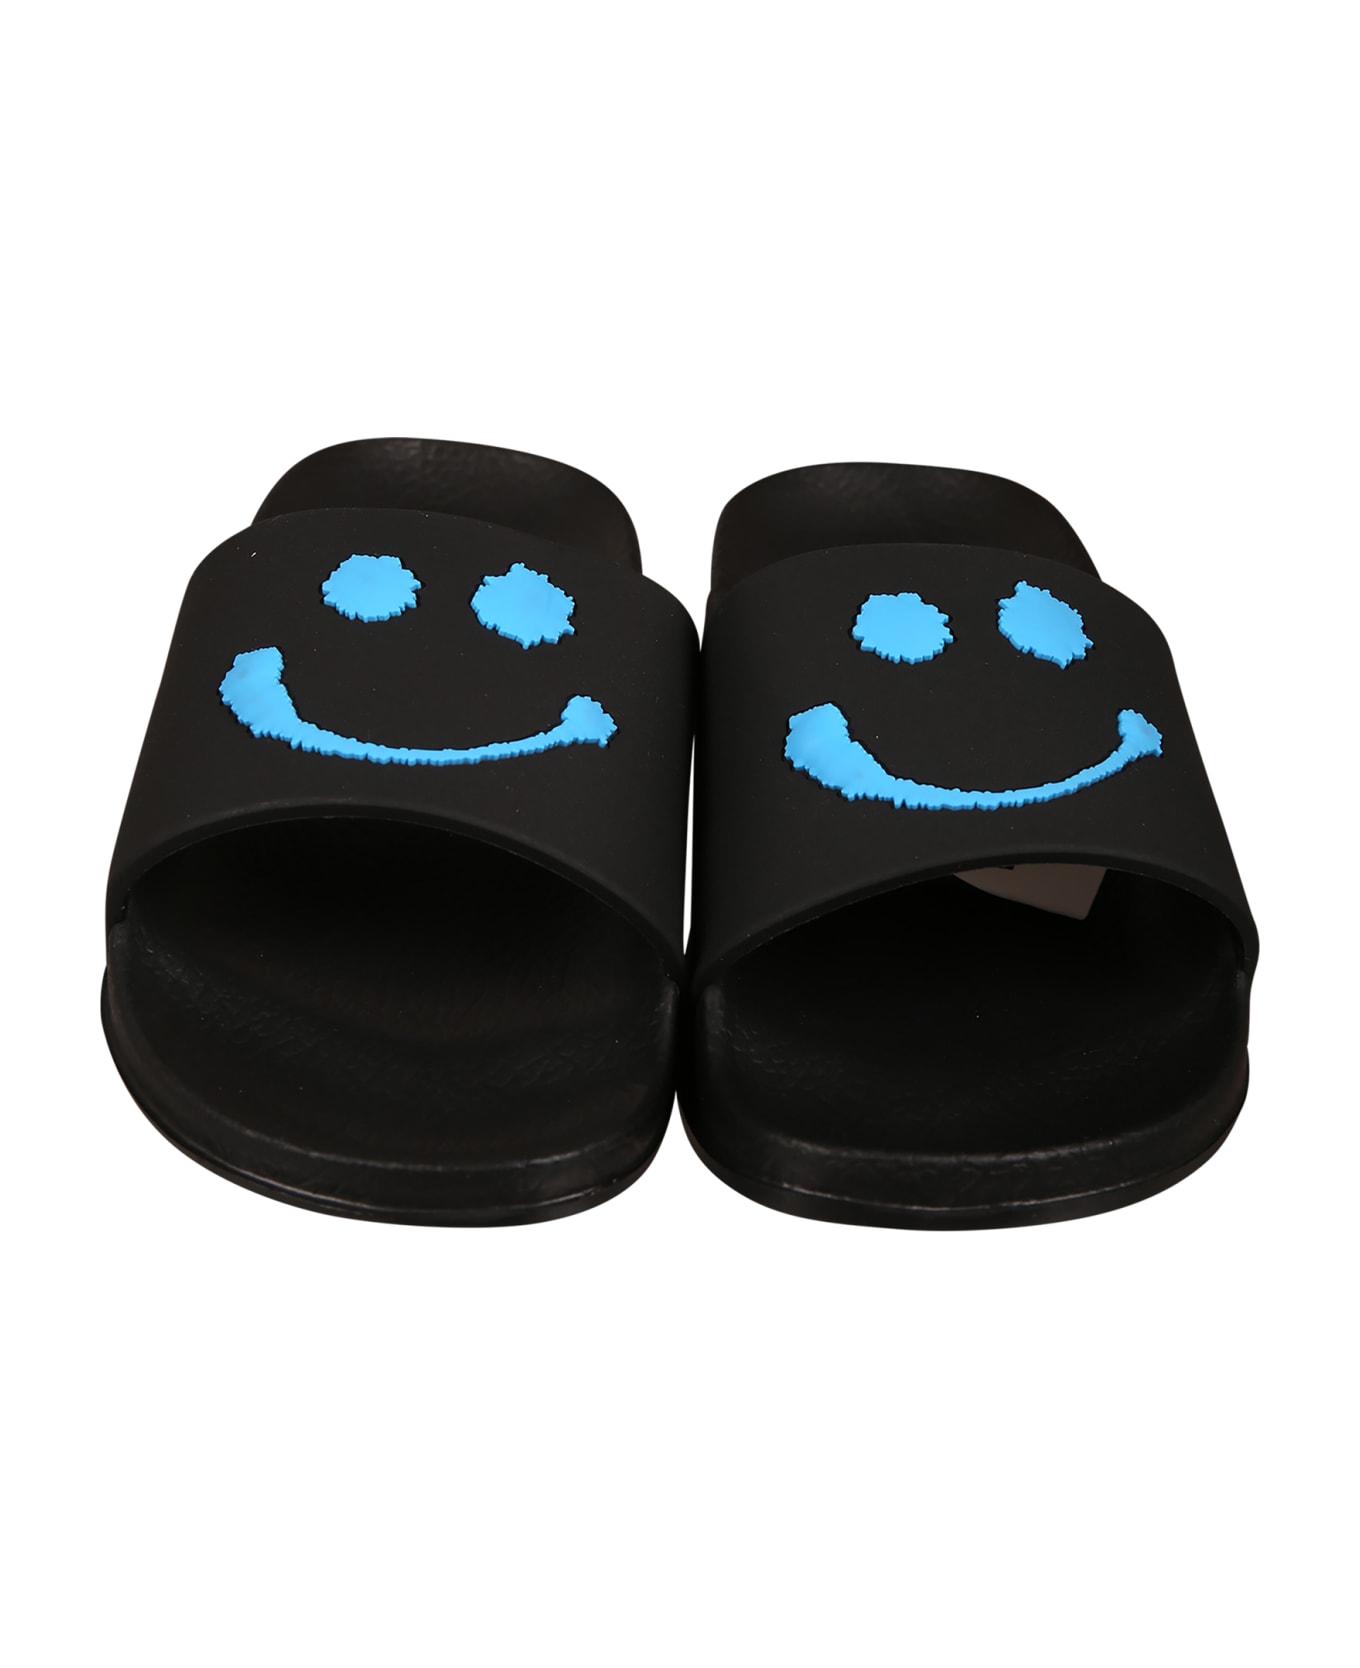 Molo Sandales Noires Pour Garçon Avec Smiley - Black